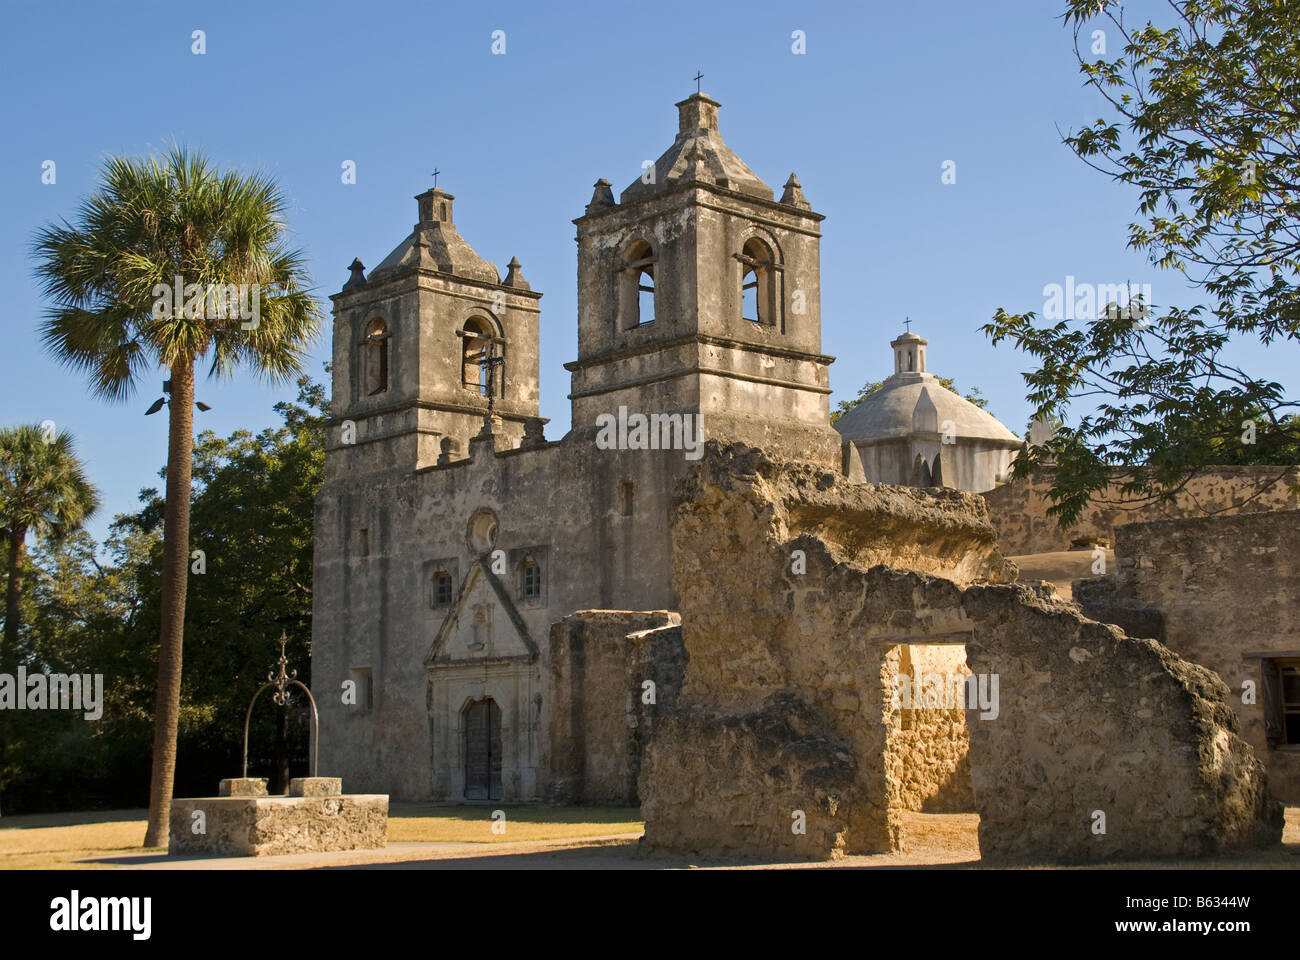 San Antonio Missions, Concepcion (AKA Franciscan mission of Nuestra Senora de la Purisima Concepcion), State Historic Site Stock Photo